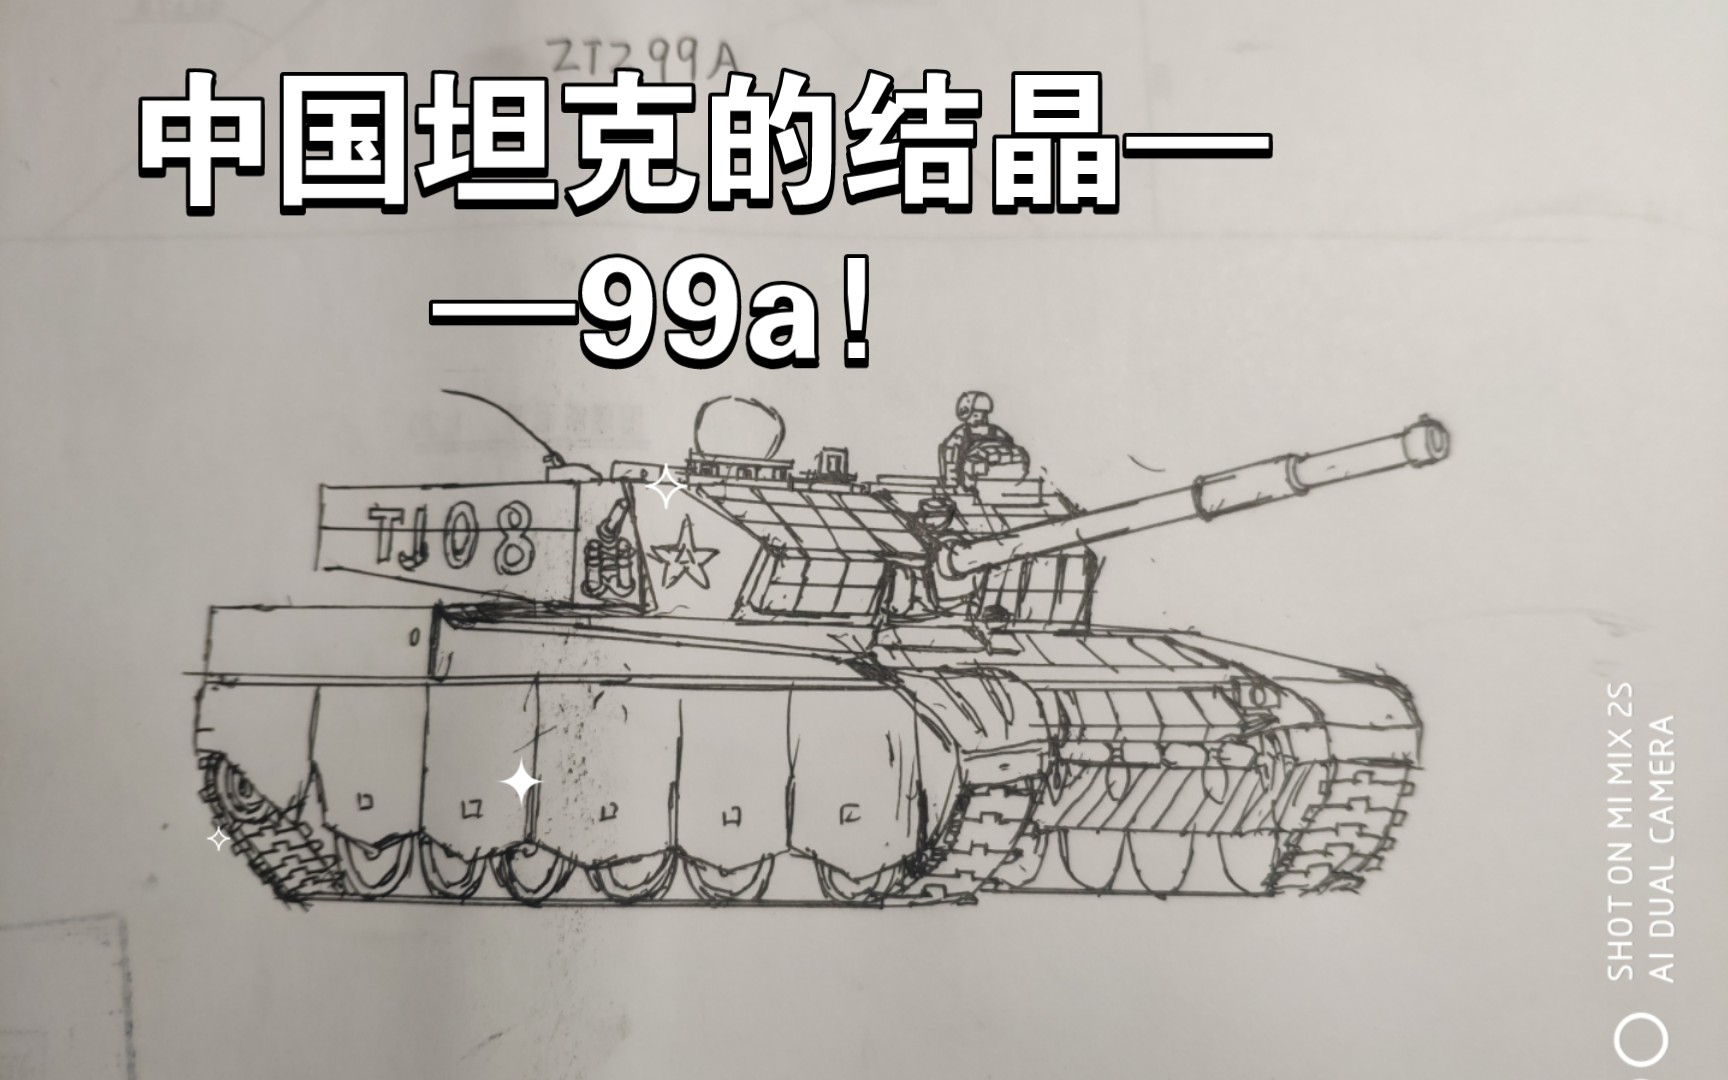 中国坦克的结晶——99a!(手绘)